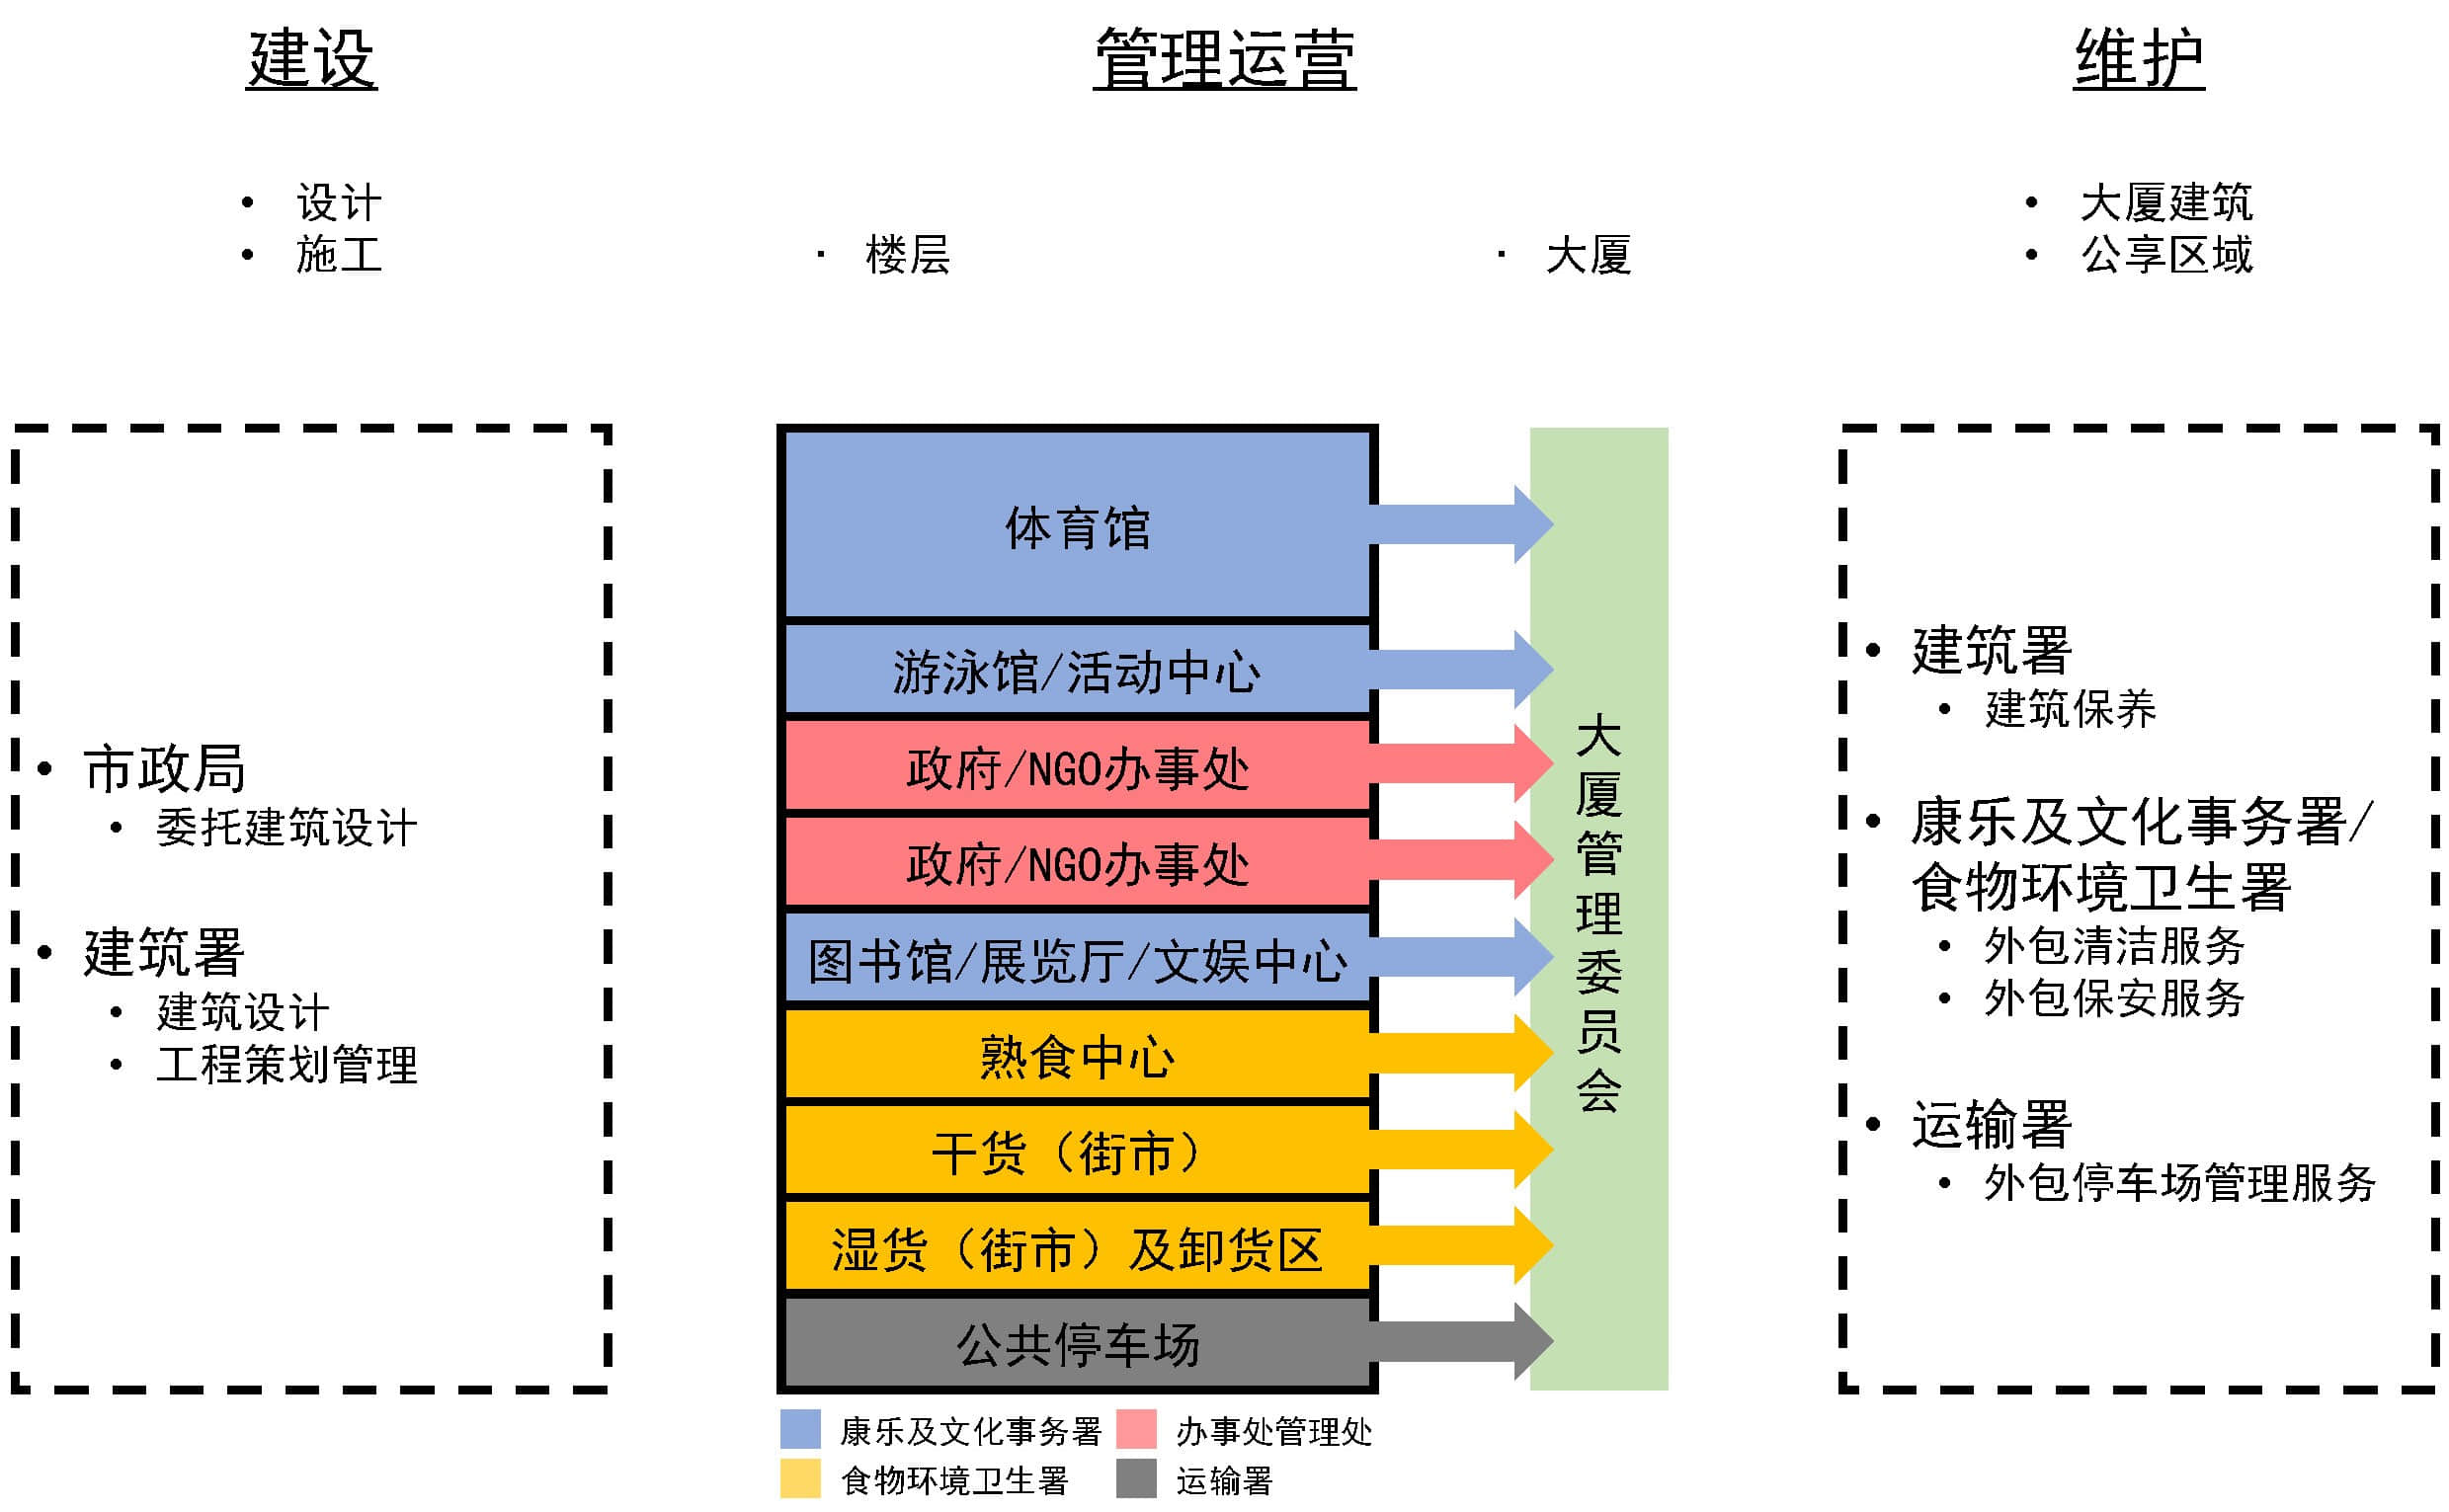 香港市政大厦管理体系